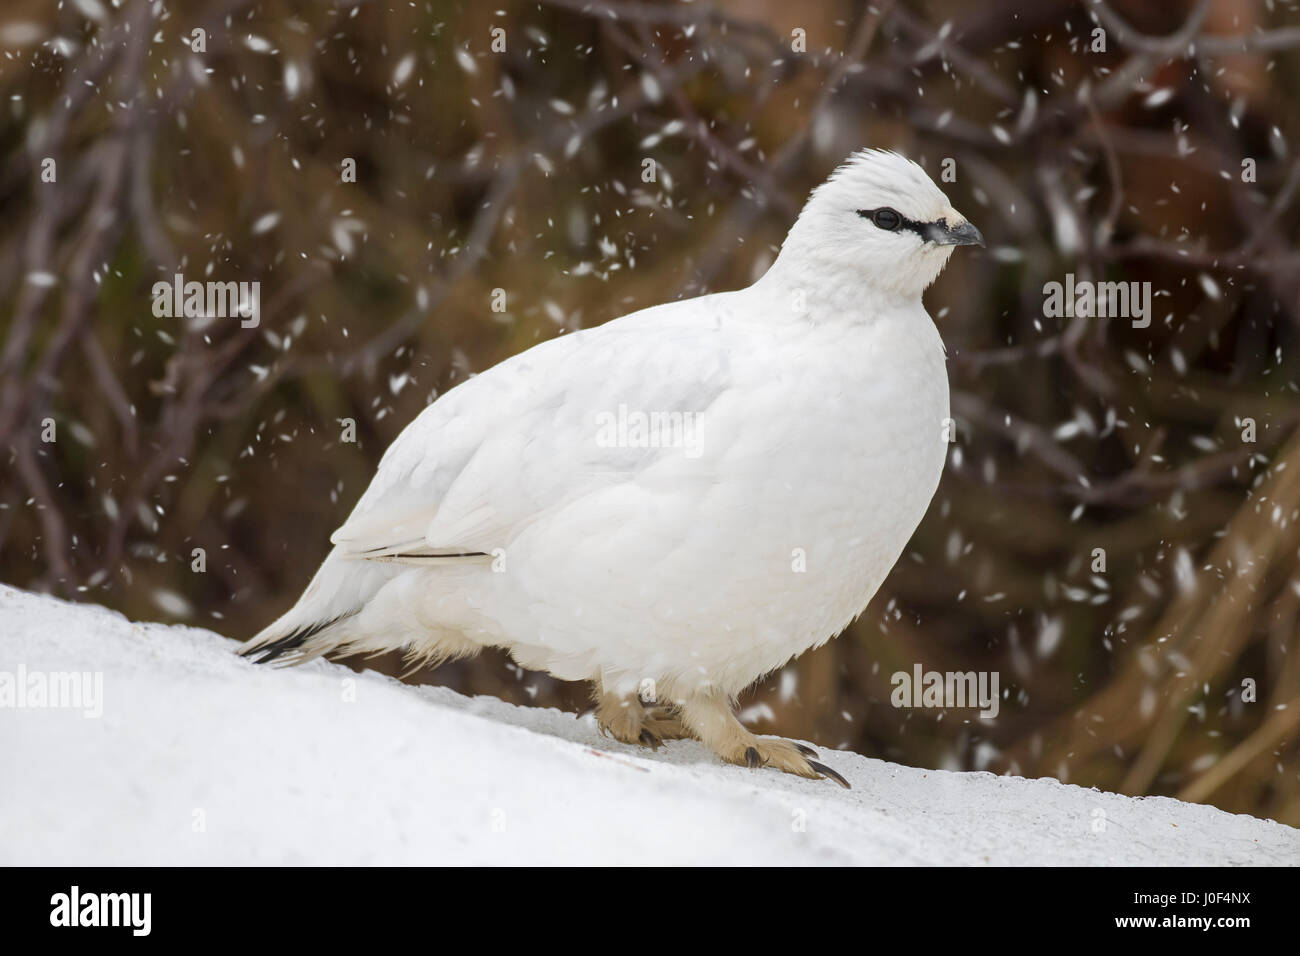 Rock ptarmigan (Lagopus muta / Lagopus mutus) female in winter plumage during snow shower Stock Photo